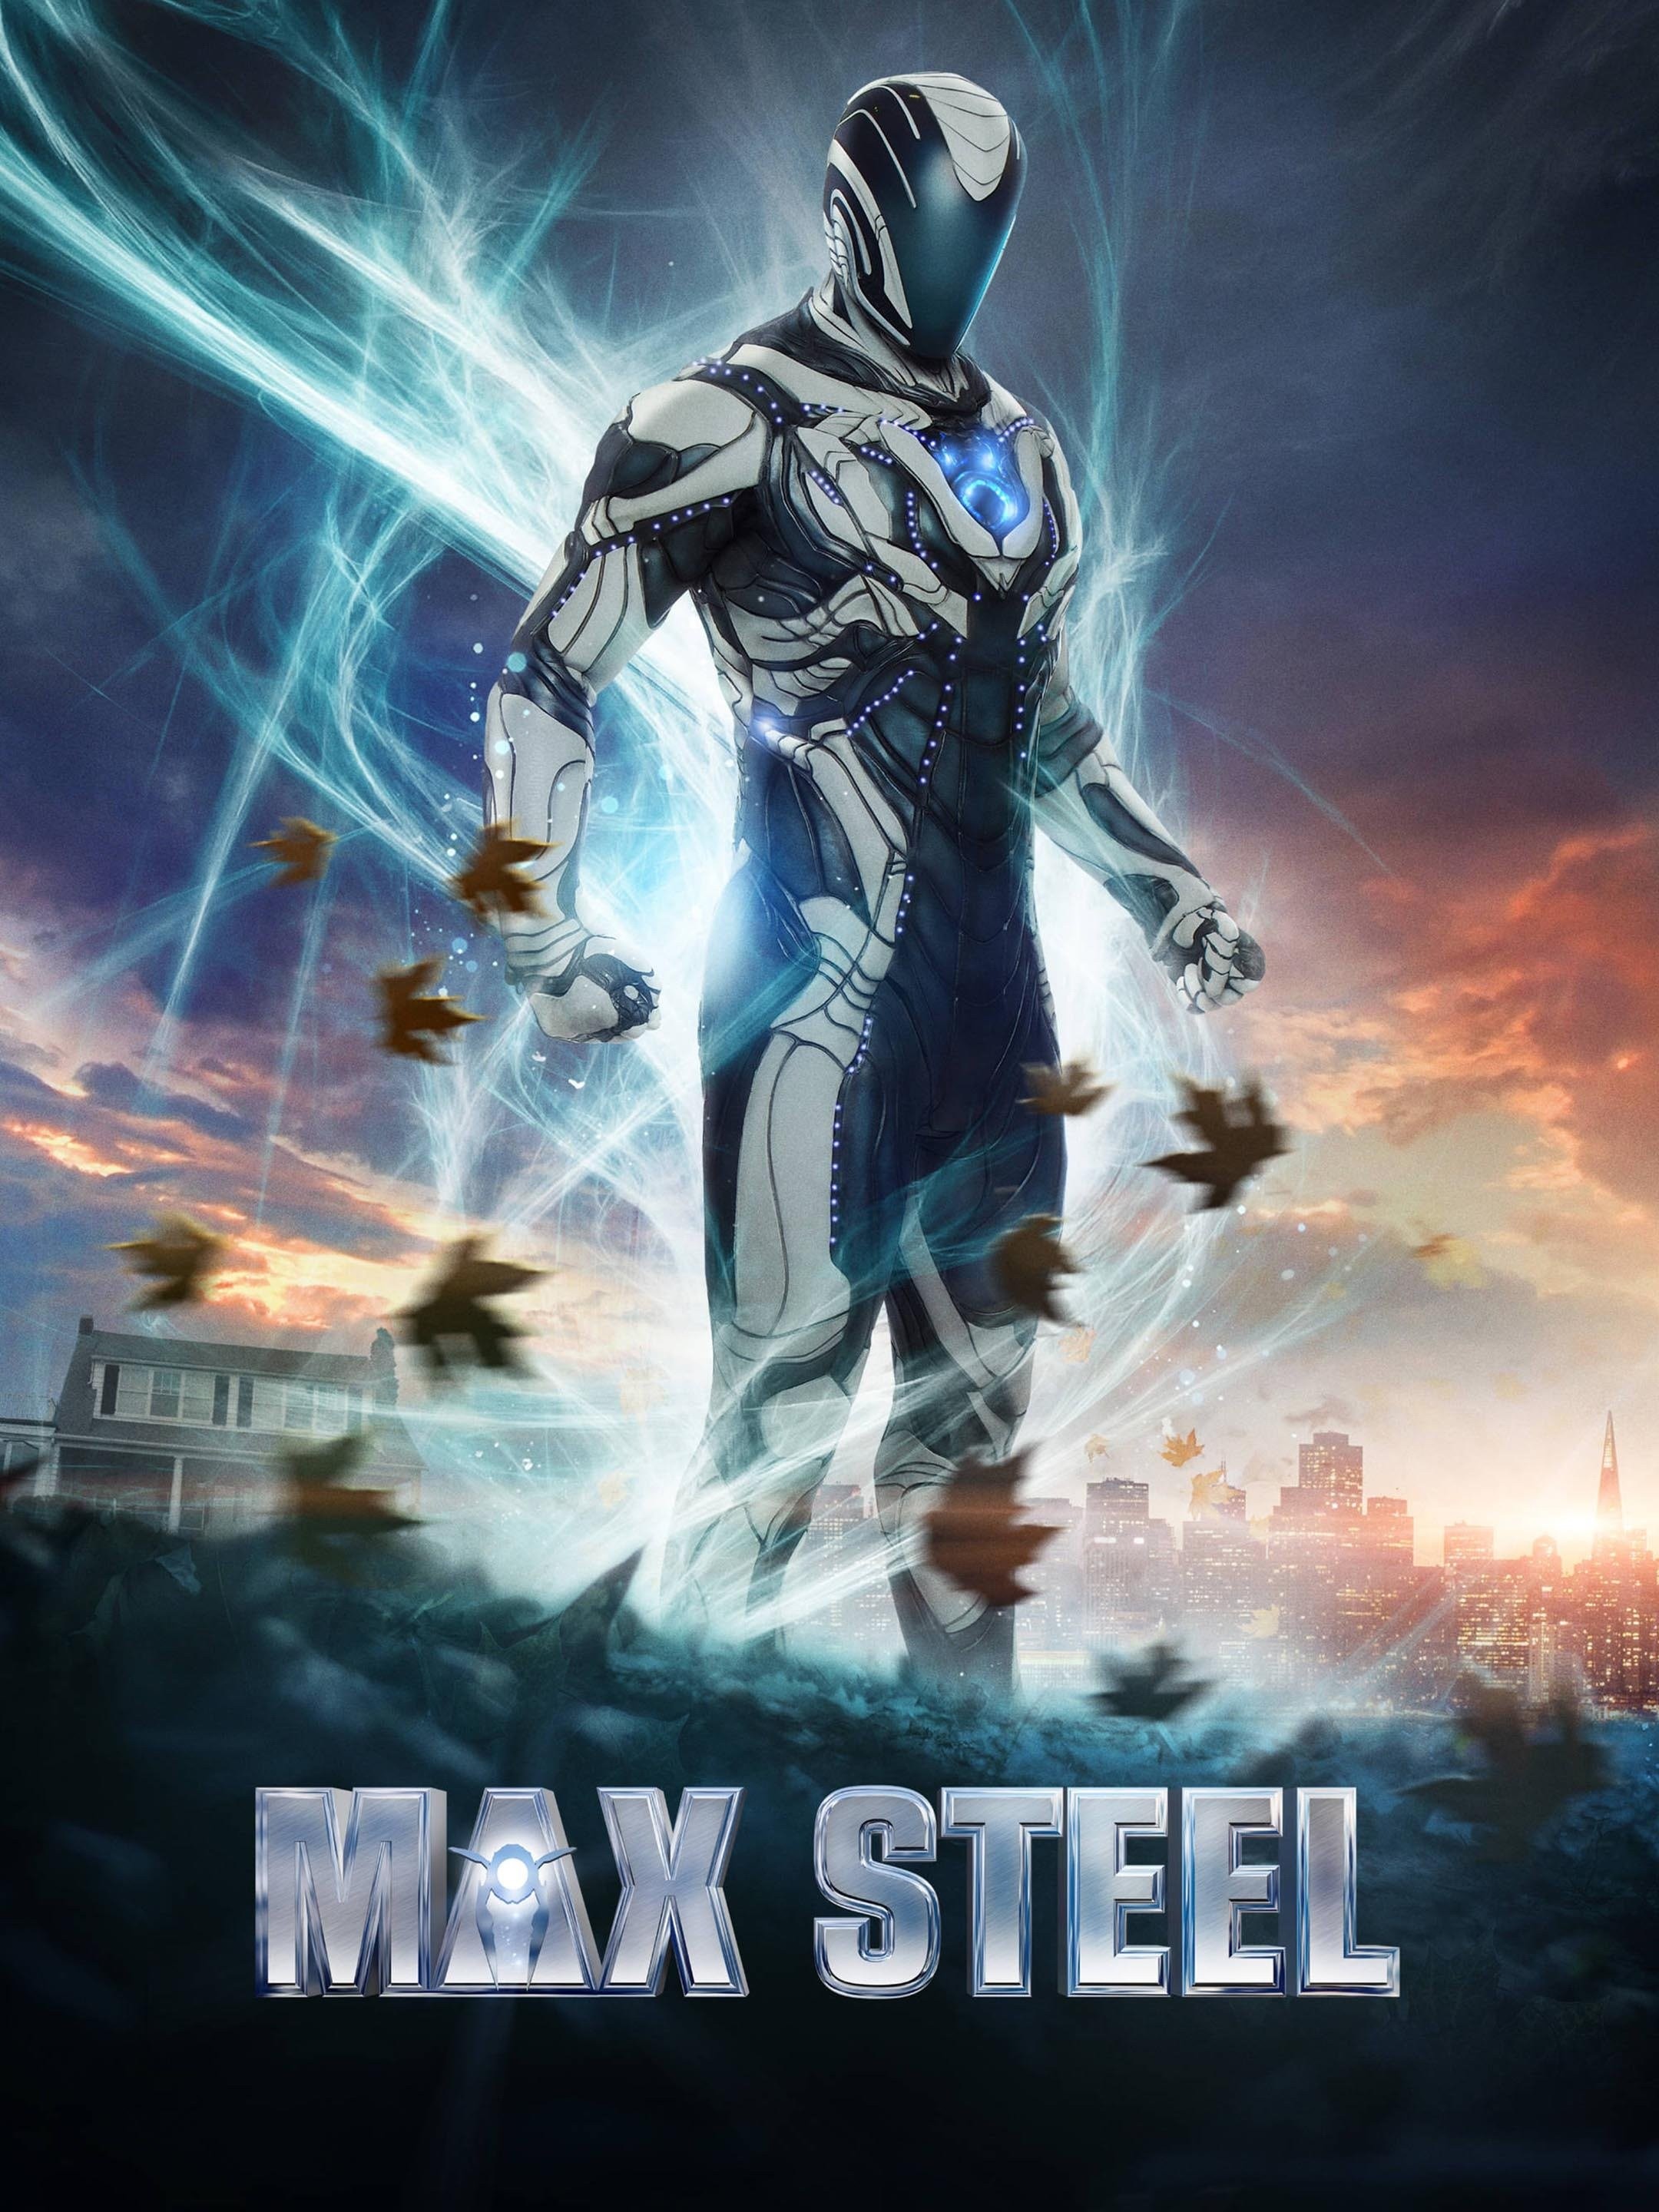 Max Steel Movie